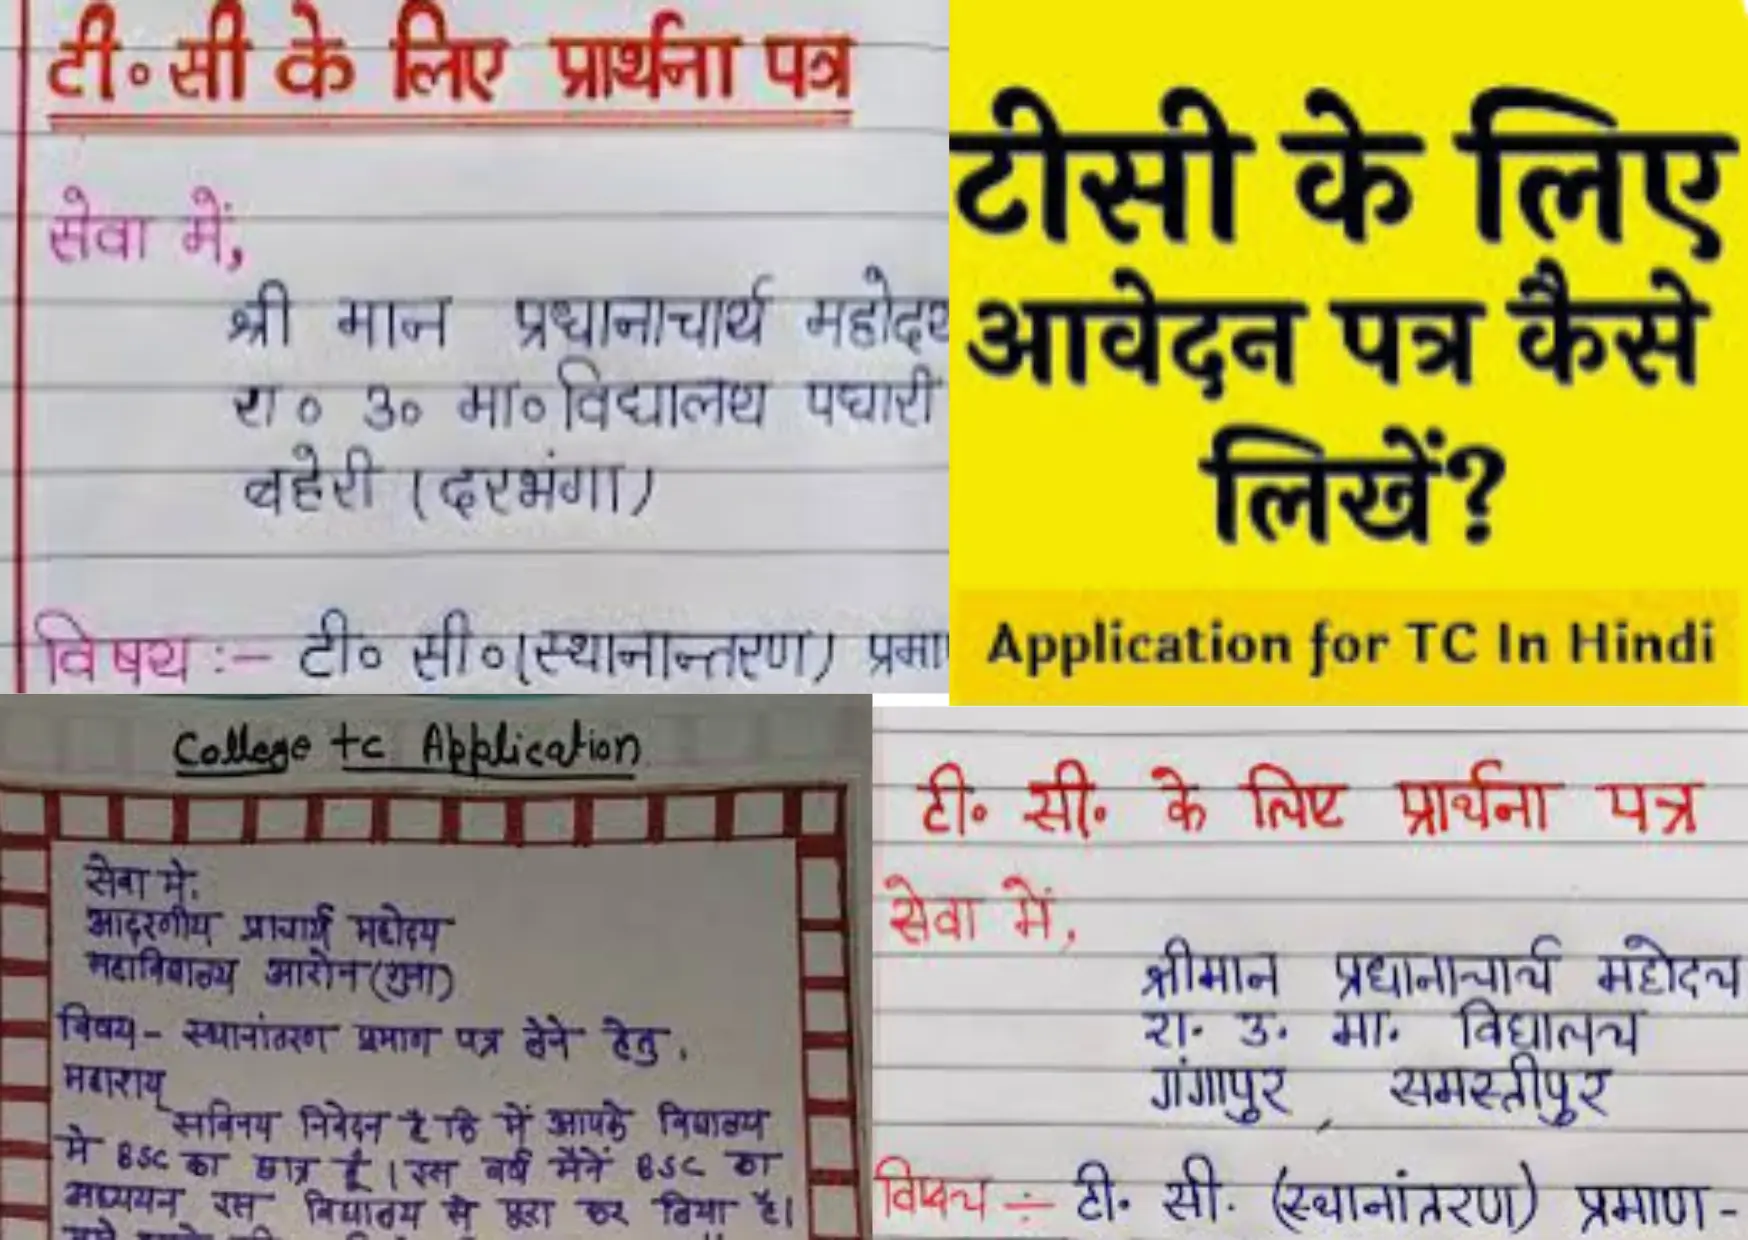 Transfer Certificate Application In Hindi | ट्रांसफर सर्टिफिकेट आवेदन की प्रक्रिया